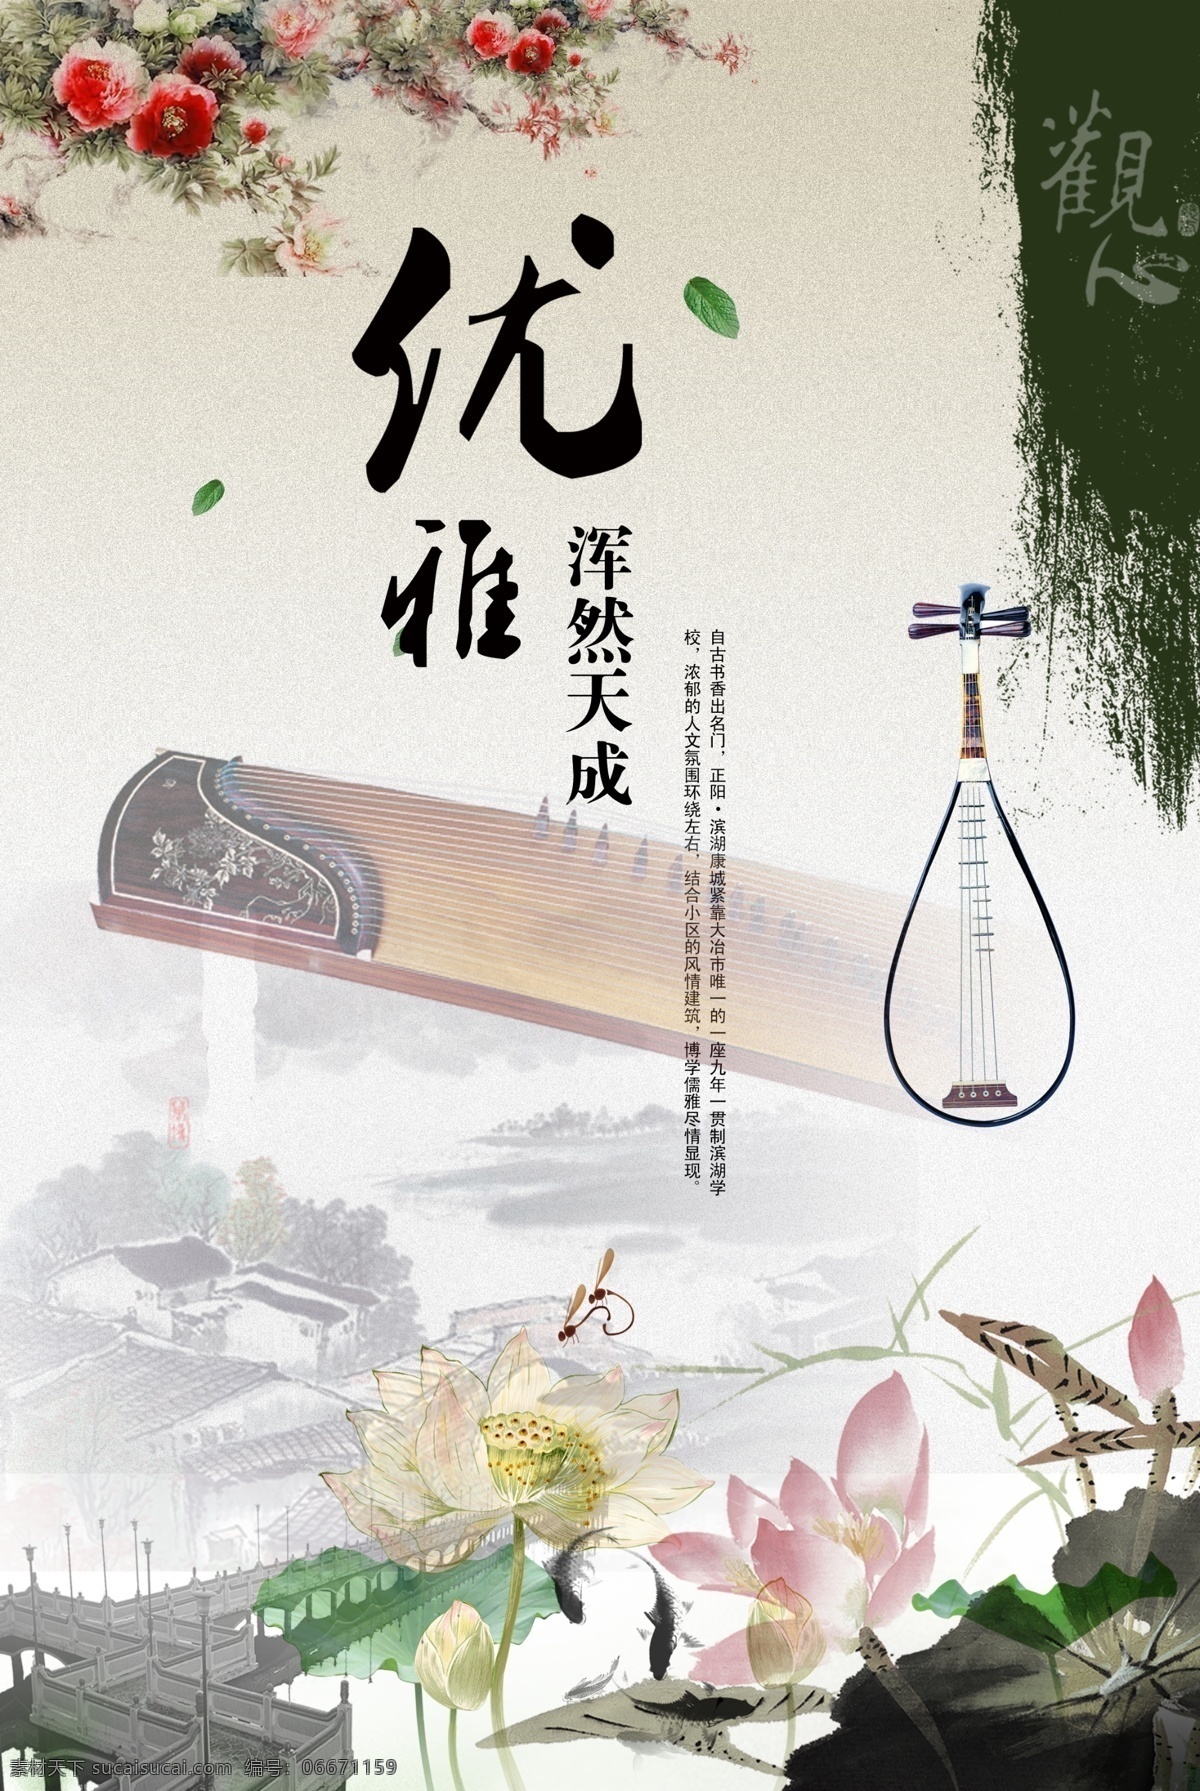 古筝 琵琶 意境 海报 意境素材 中国风素材 荷叶素材 荷花素材 古筝素材 水墨素材